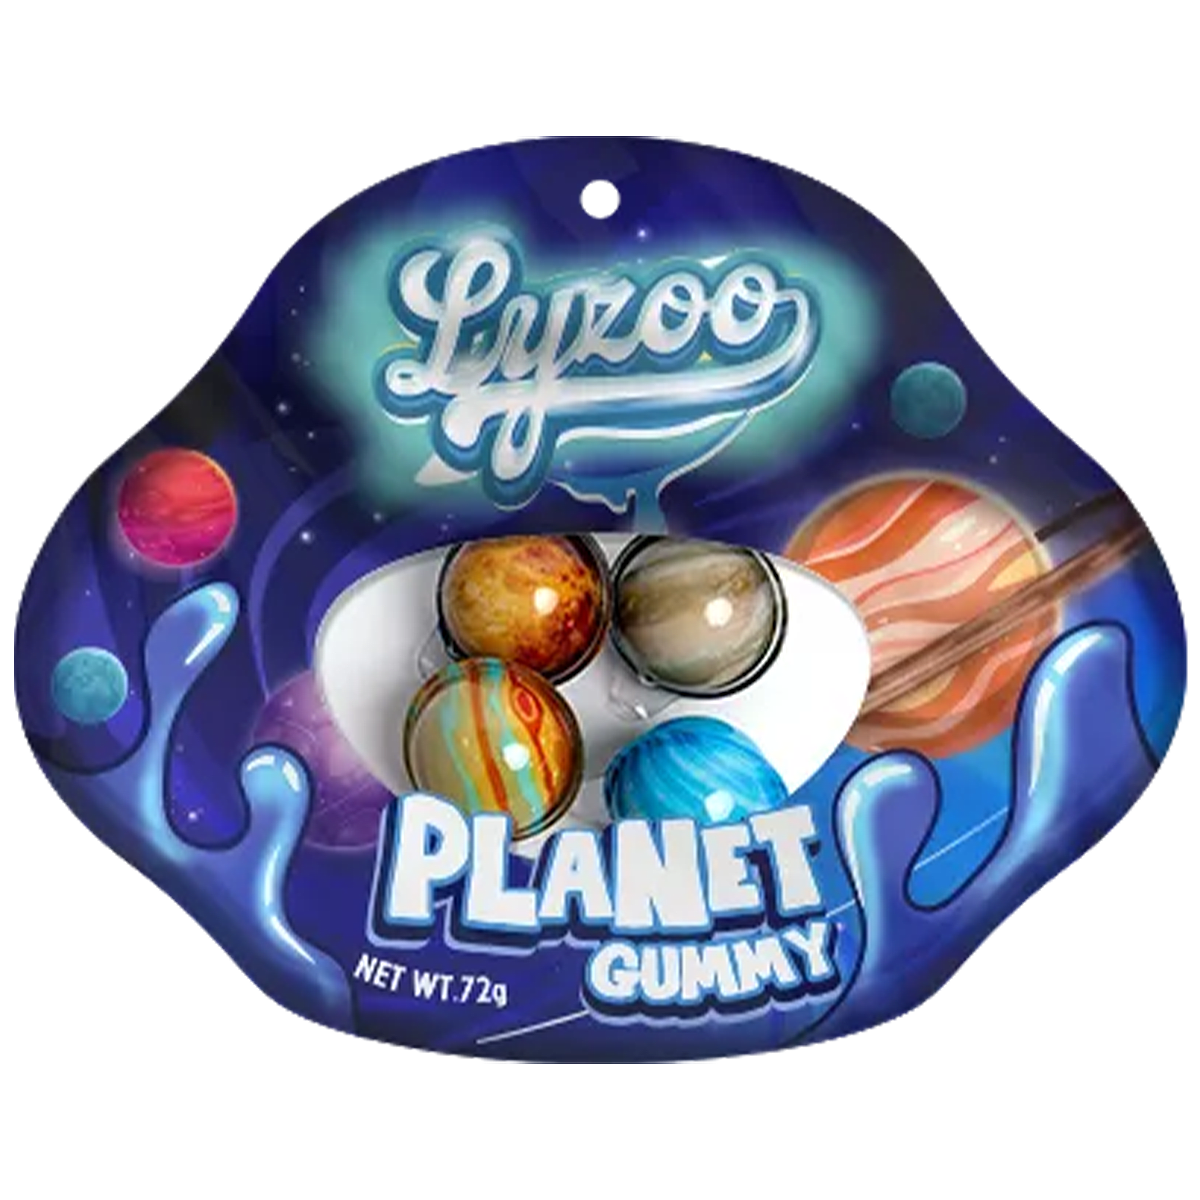 Lyzoo Planet Gummies